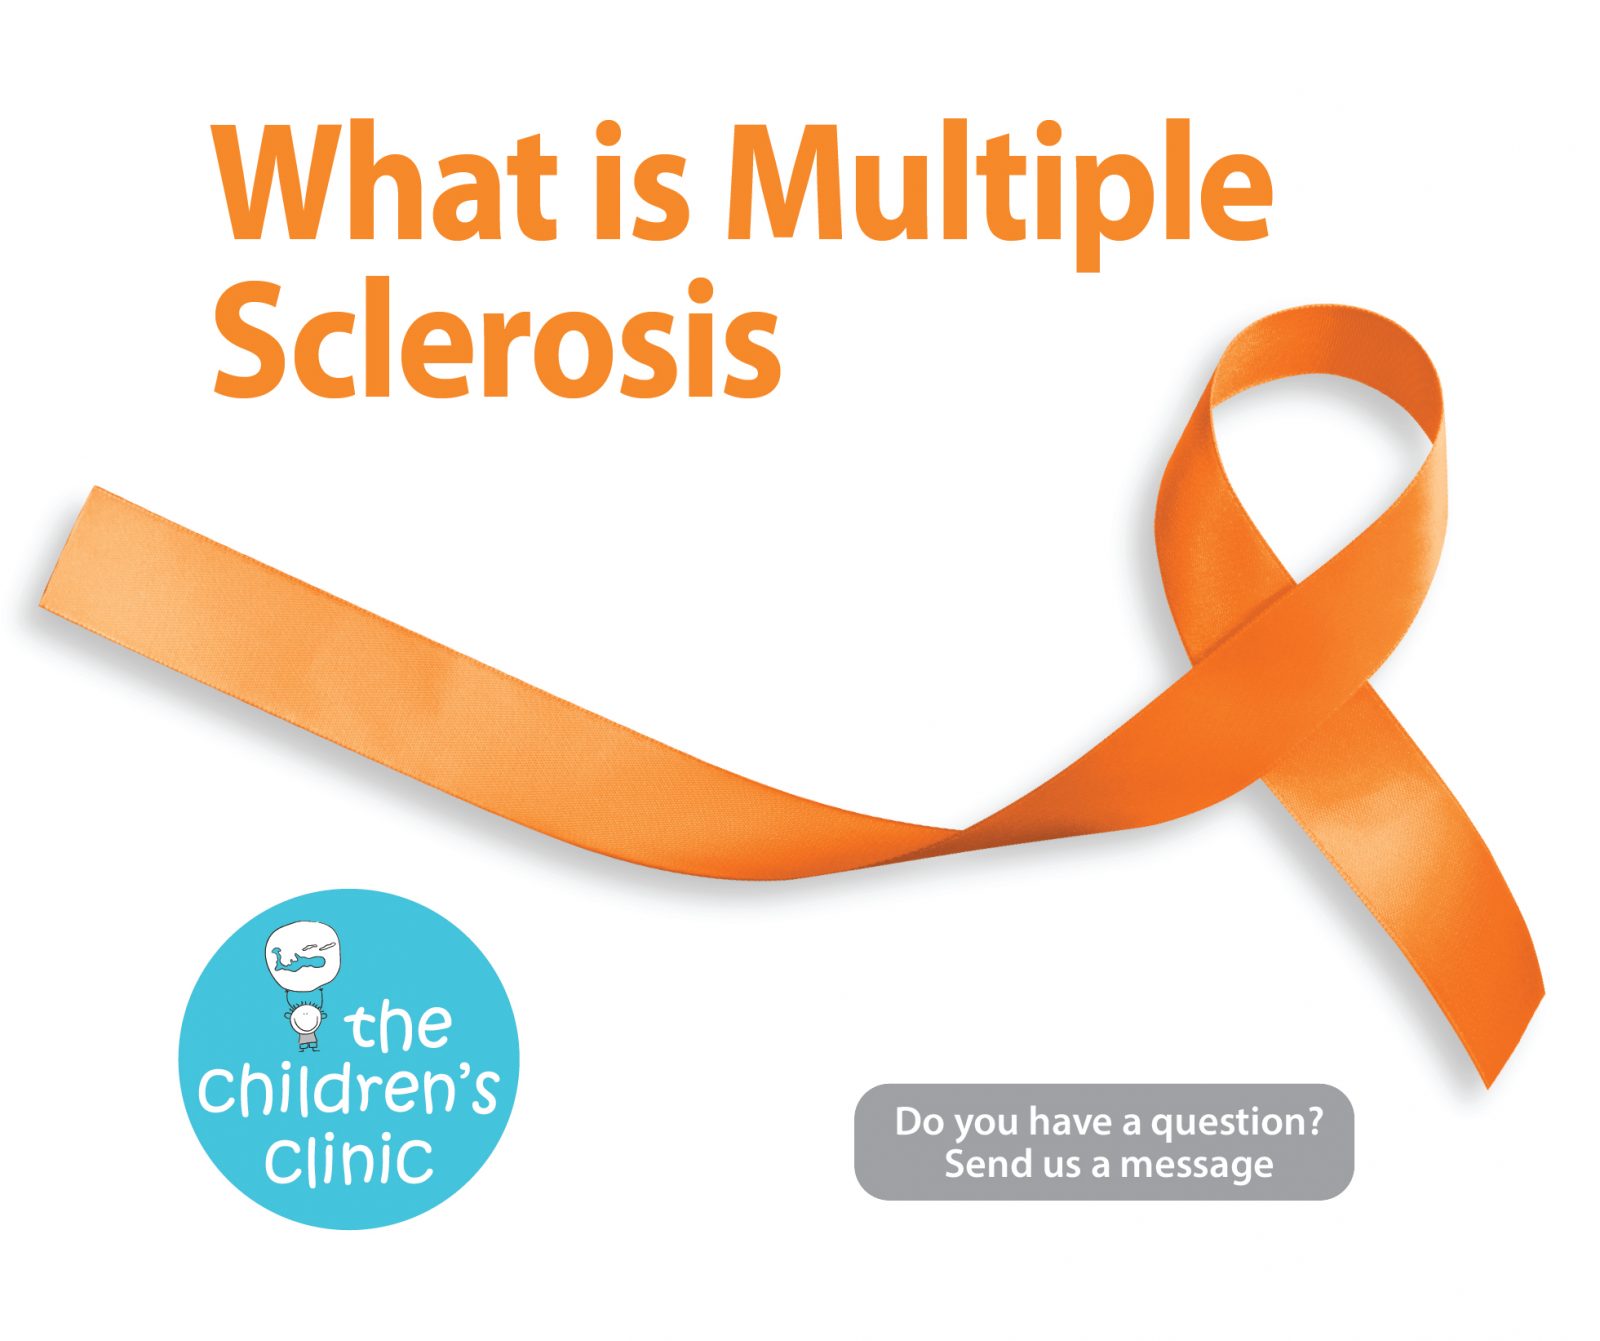 MultipleSclerosis